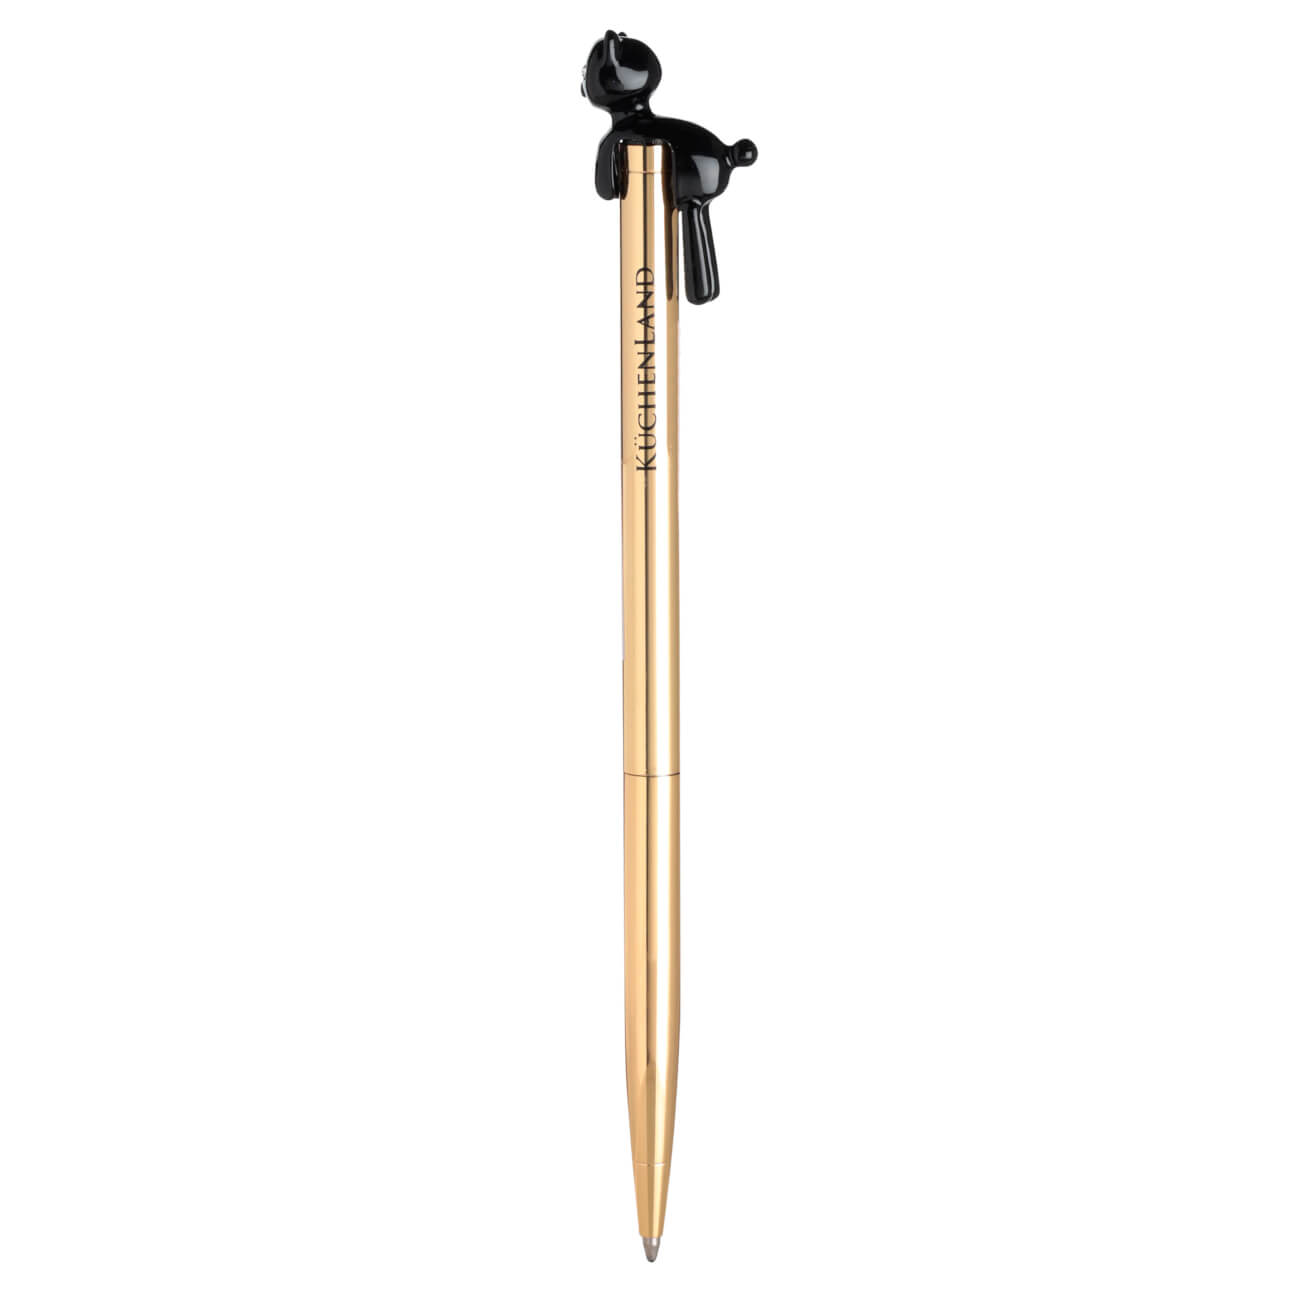 Ручка шариковая, 14 см, с фигуркой, металл, золотистая, Черный кот, Draw figure ручка закладка